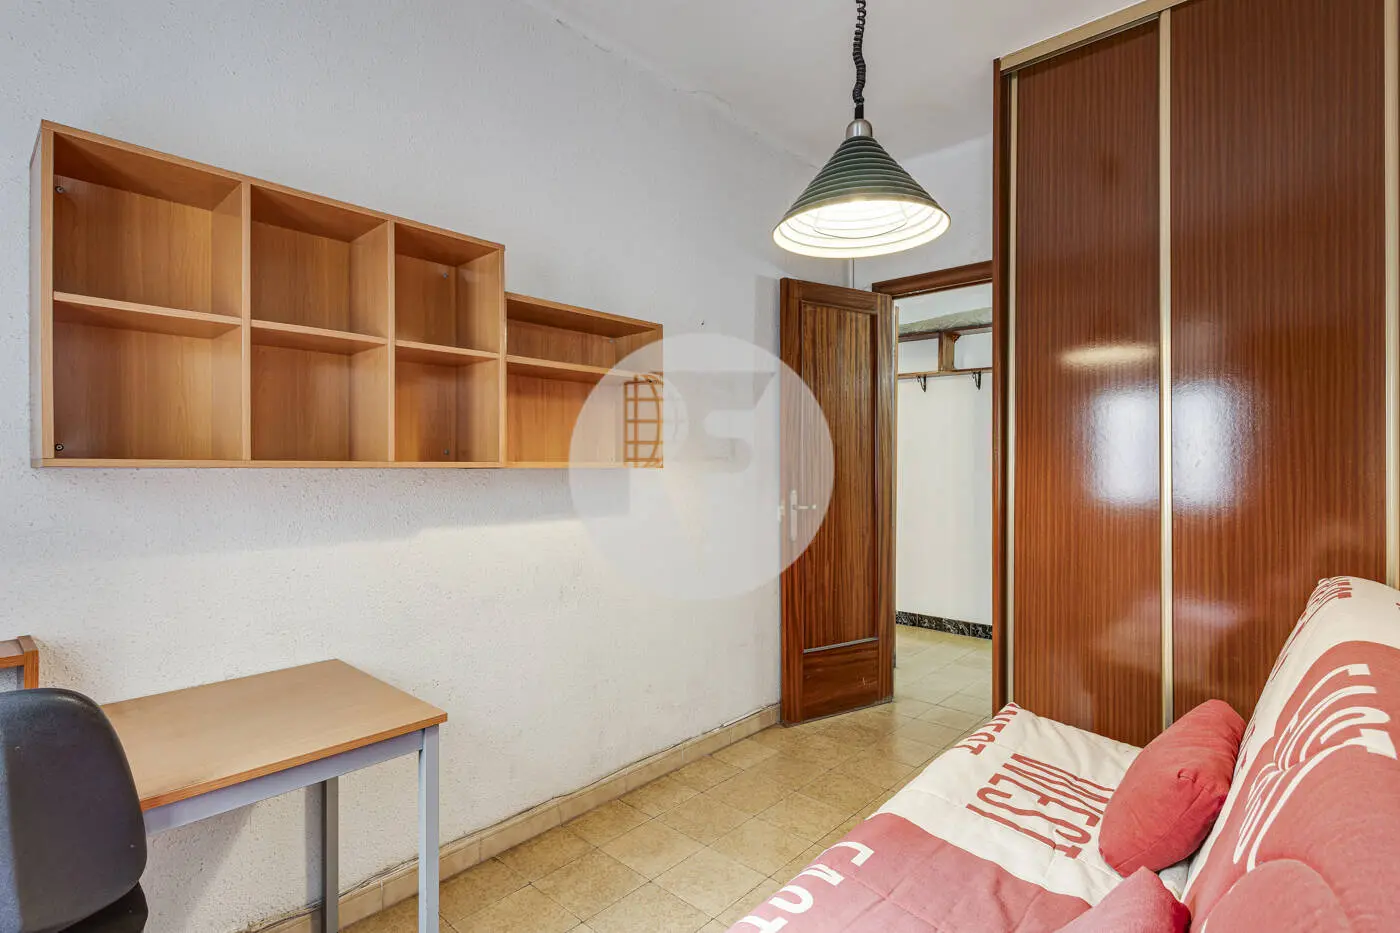 Pis de 3 habitacions ubicat al barri de la Nova Esquerra de l'Eixample de Barcelona. 21